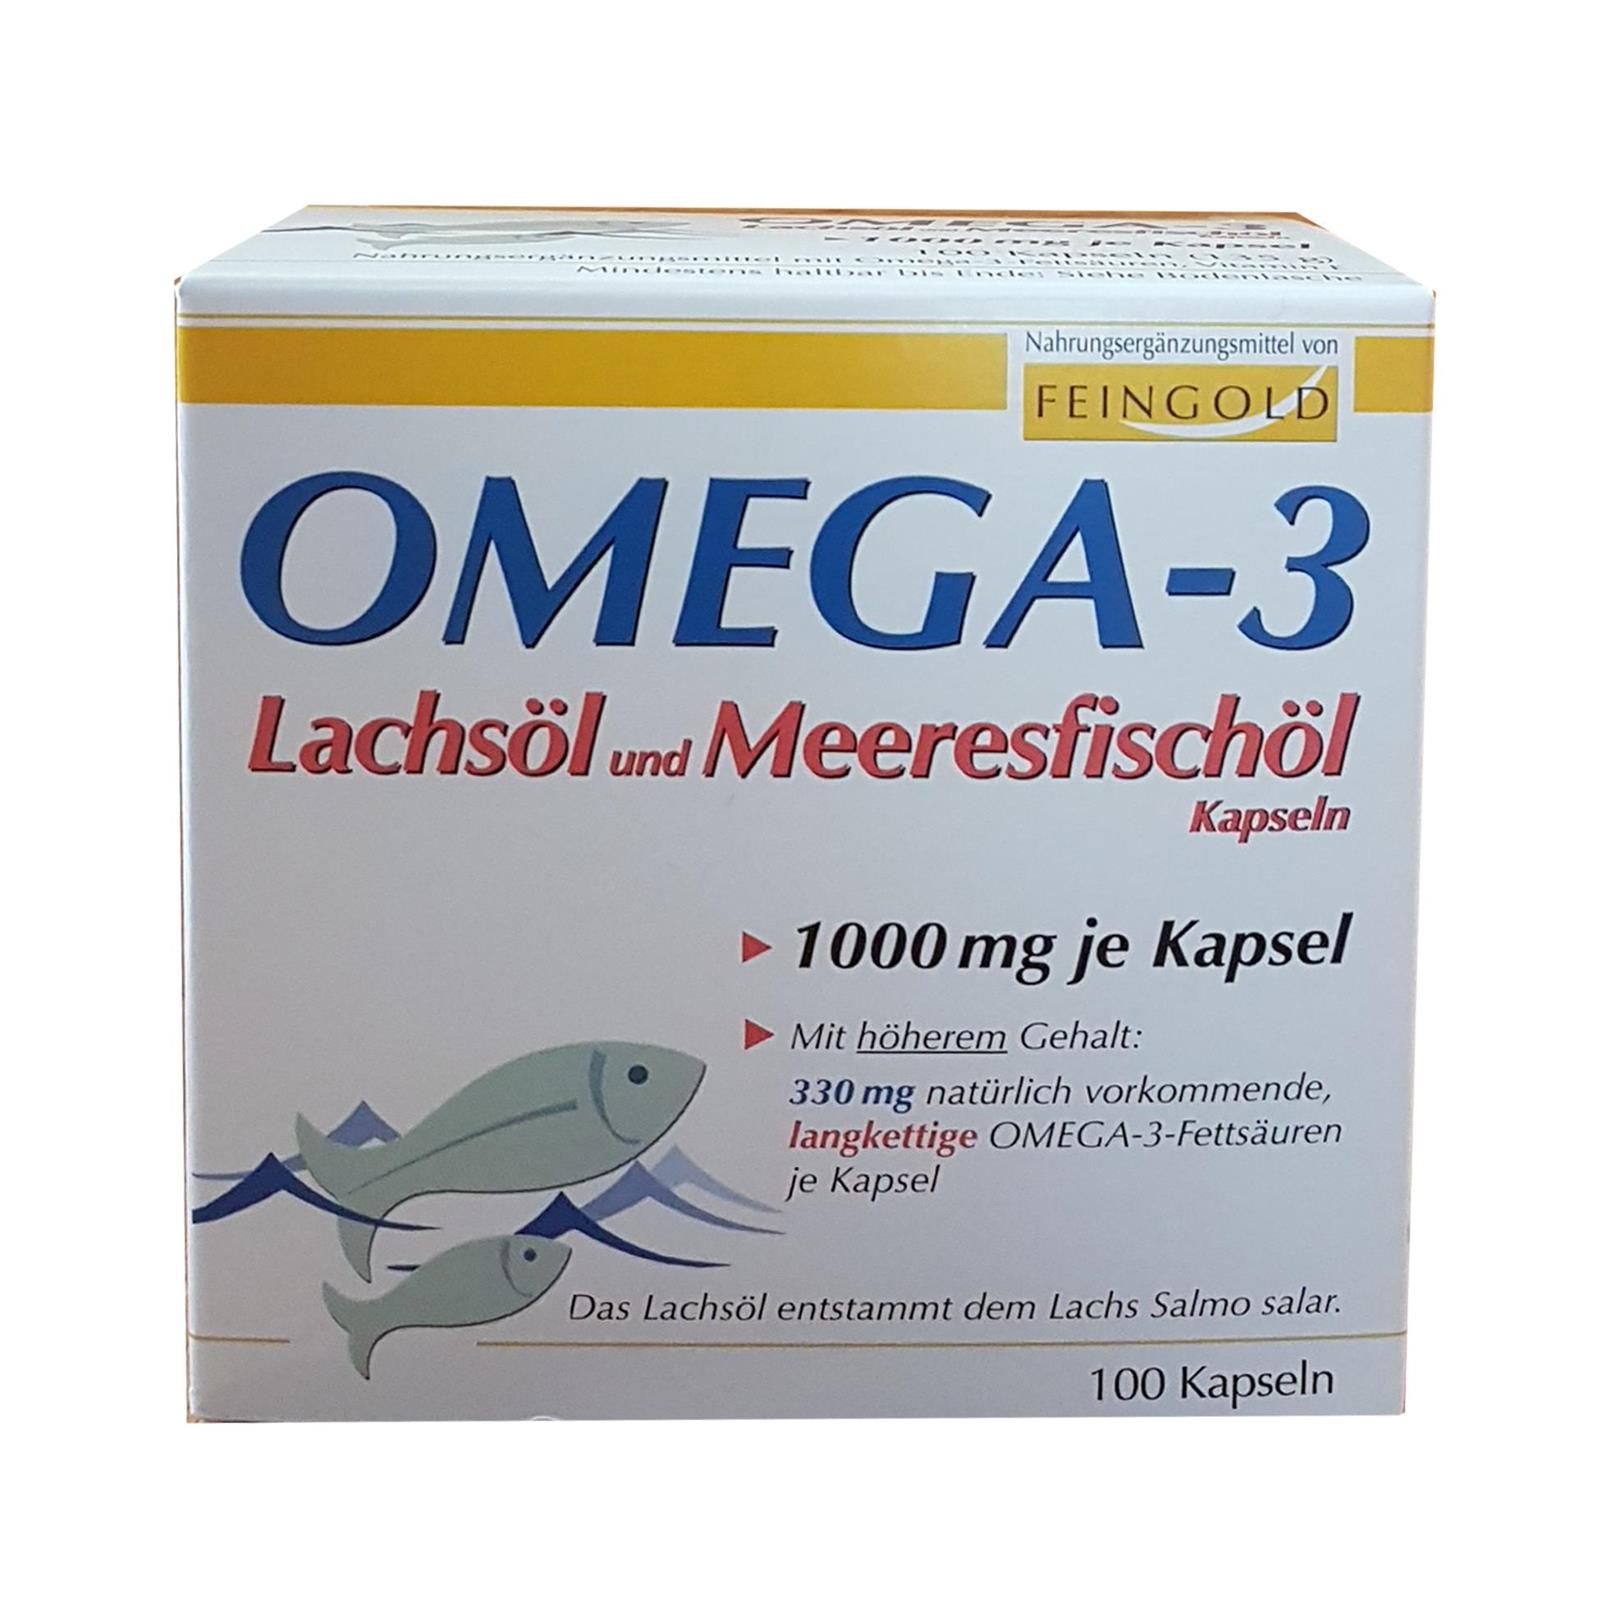 Omega-3 Lachsöl und Meeresfischöl Kapseln von Burton Feingold